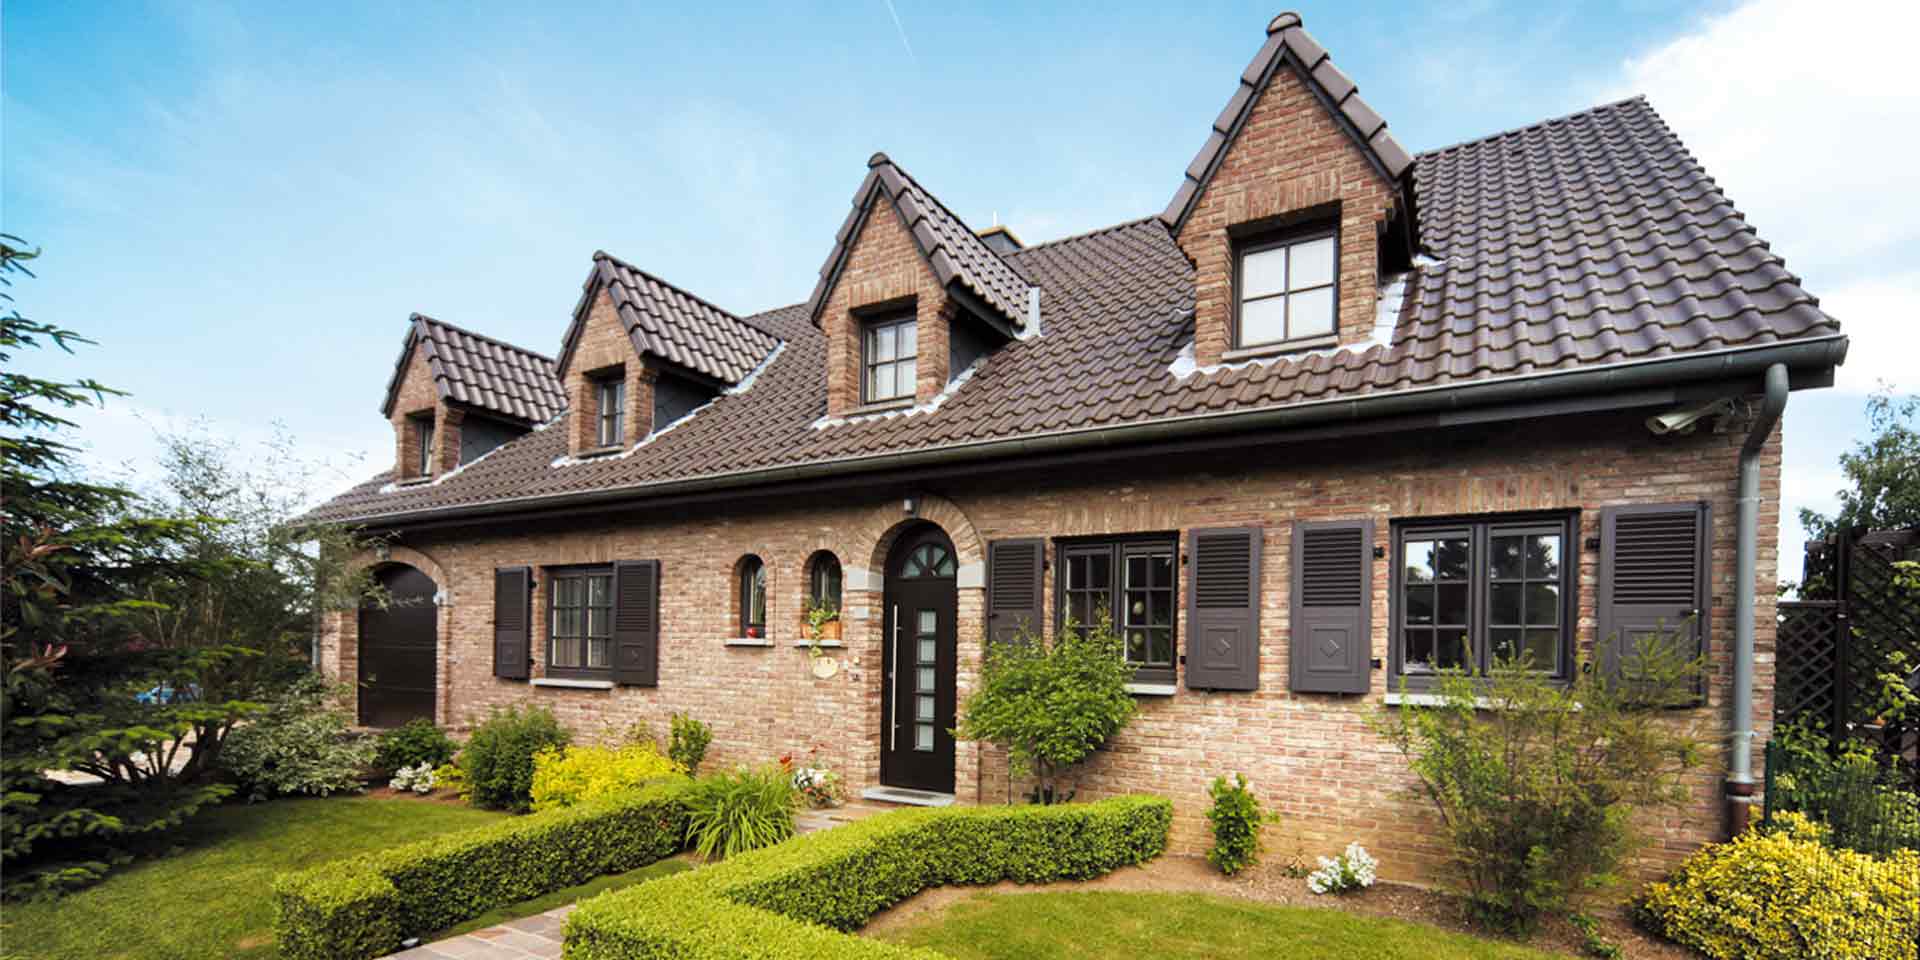 Einfamilienhaus mit Steinfassade mit brauner Coplaning Rundbogen Haustür und brauen Landhausstil klassischen einbruchsicheren Coplaning Gaubenfenster.